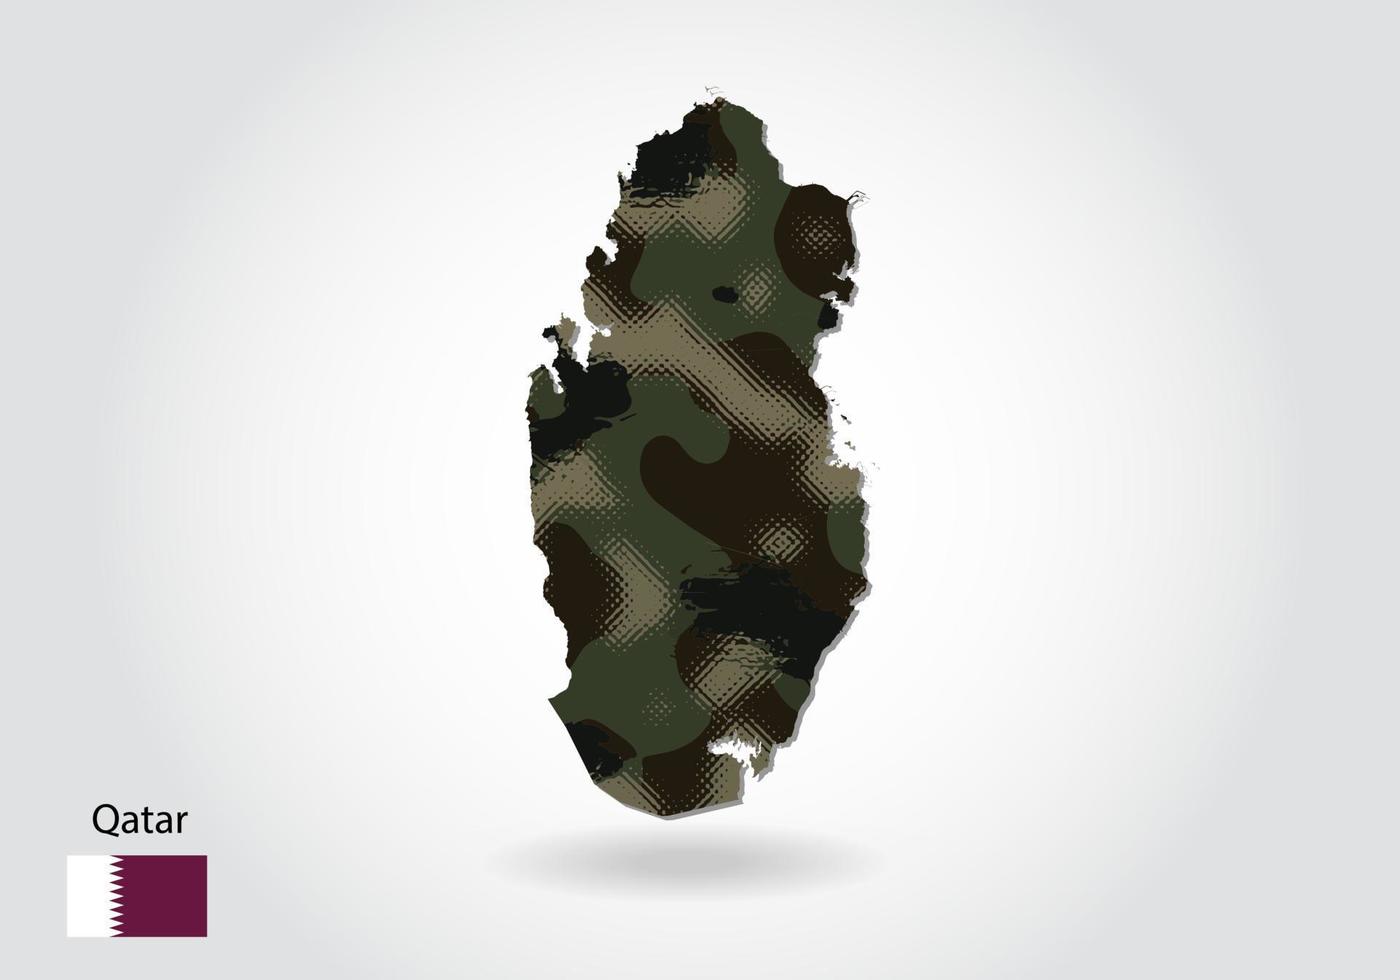 mapa qatar con patrón de camuflaje, bosque - textura verde en el mapa. concepto militar para ejército, soldado y guerra. escudo de armas, bandera. vector